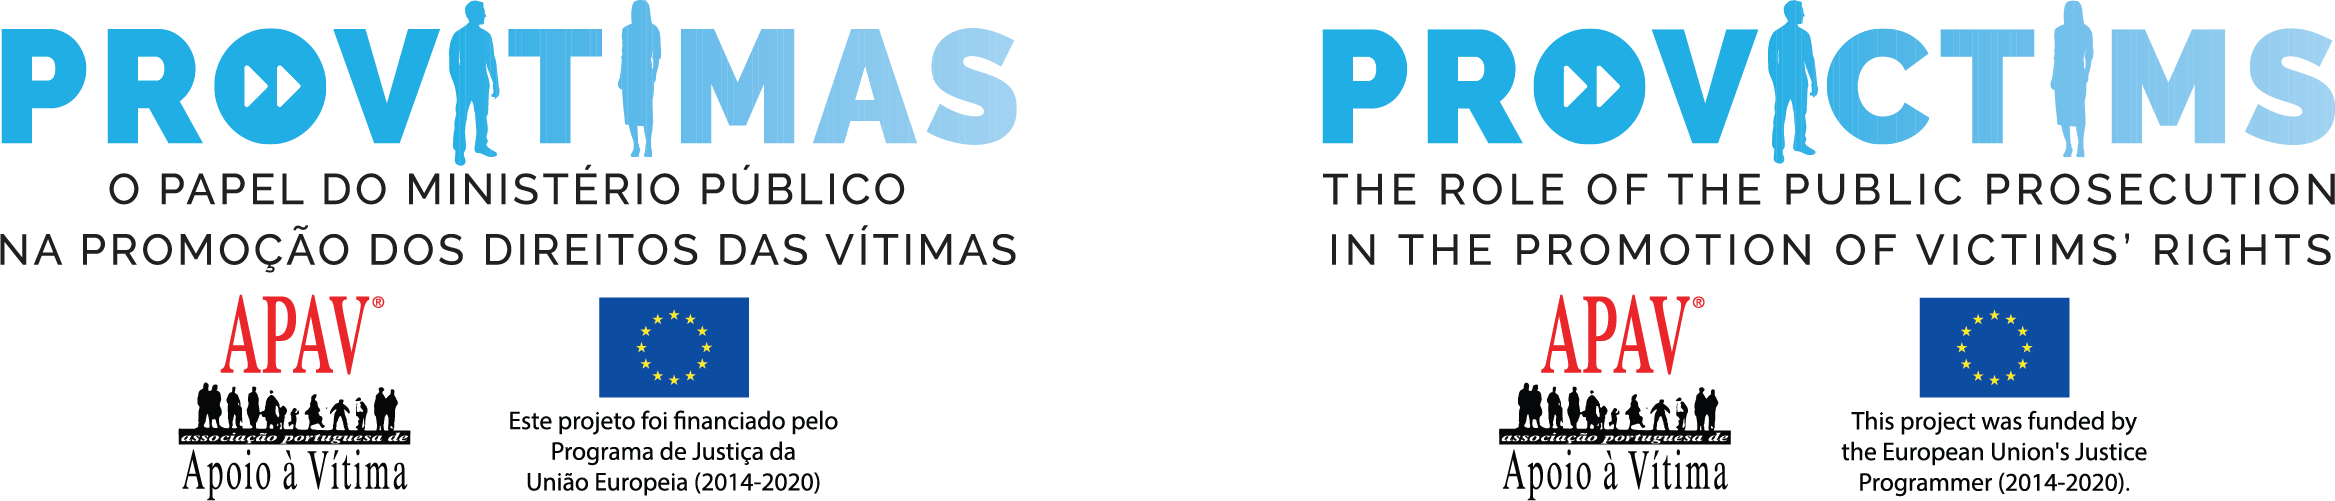 Logo Provitimas Provictims